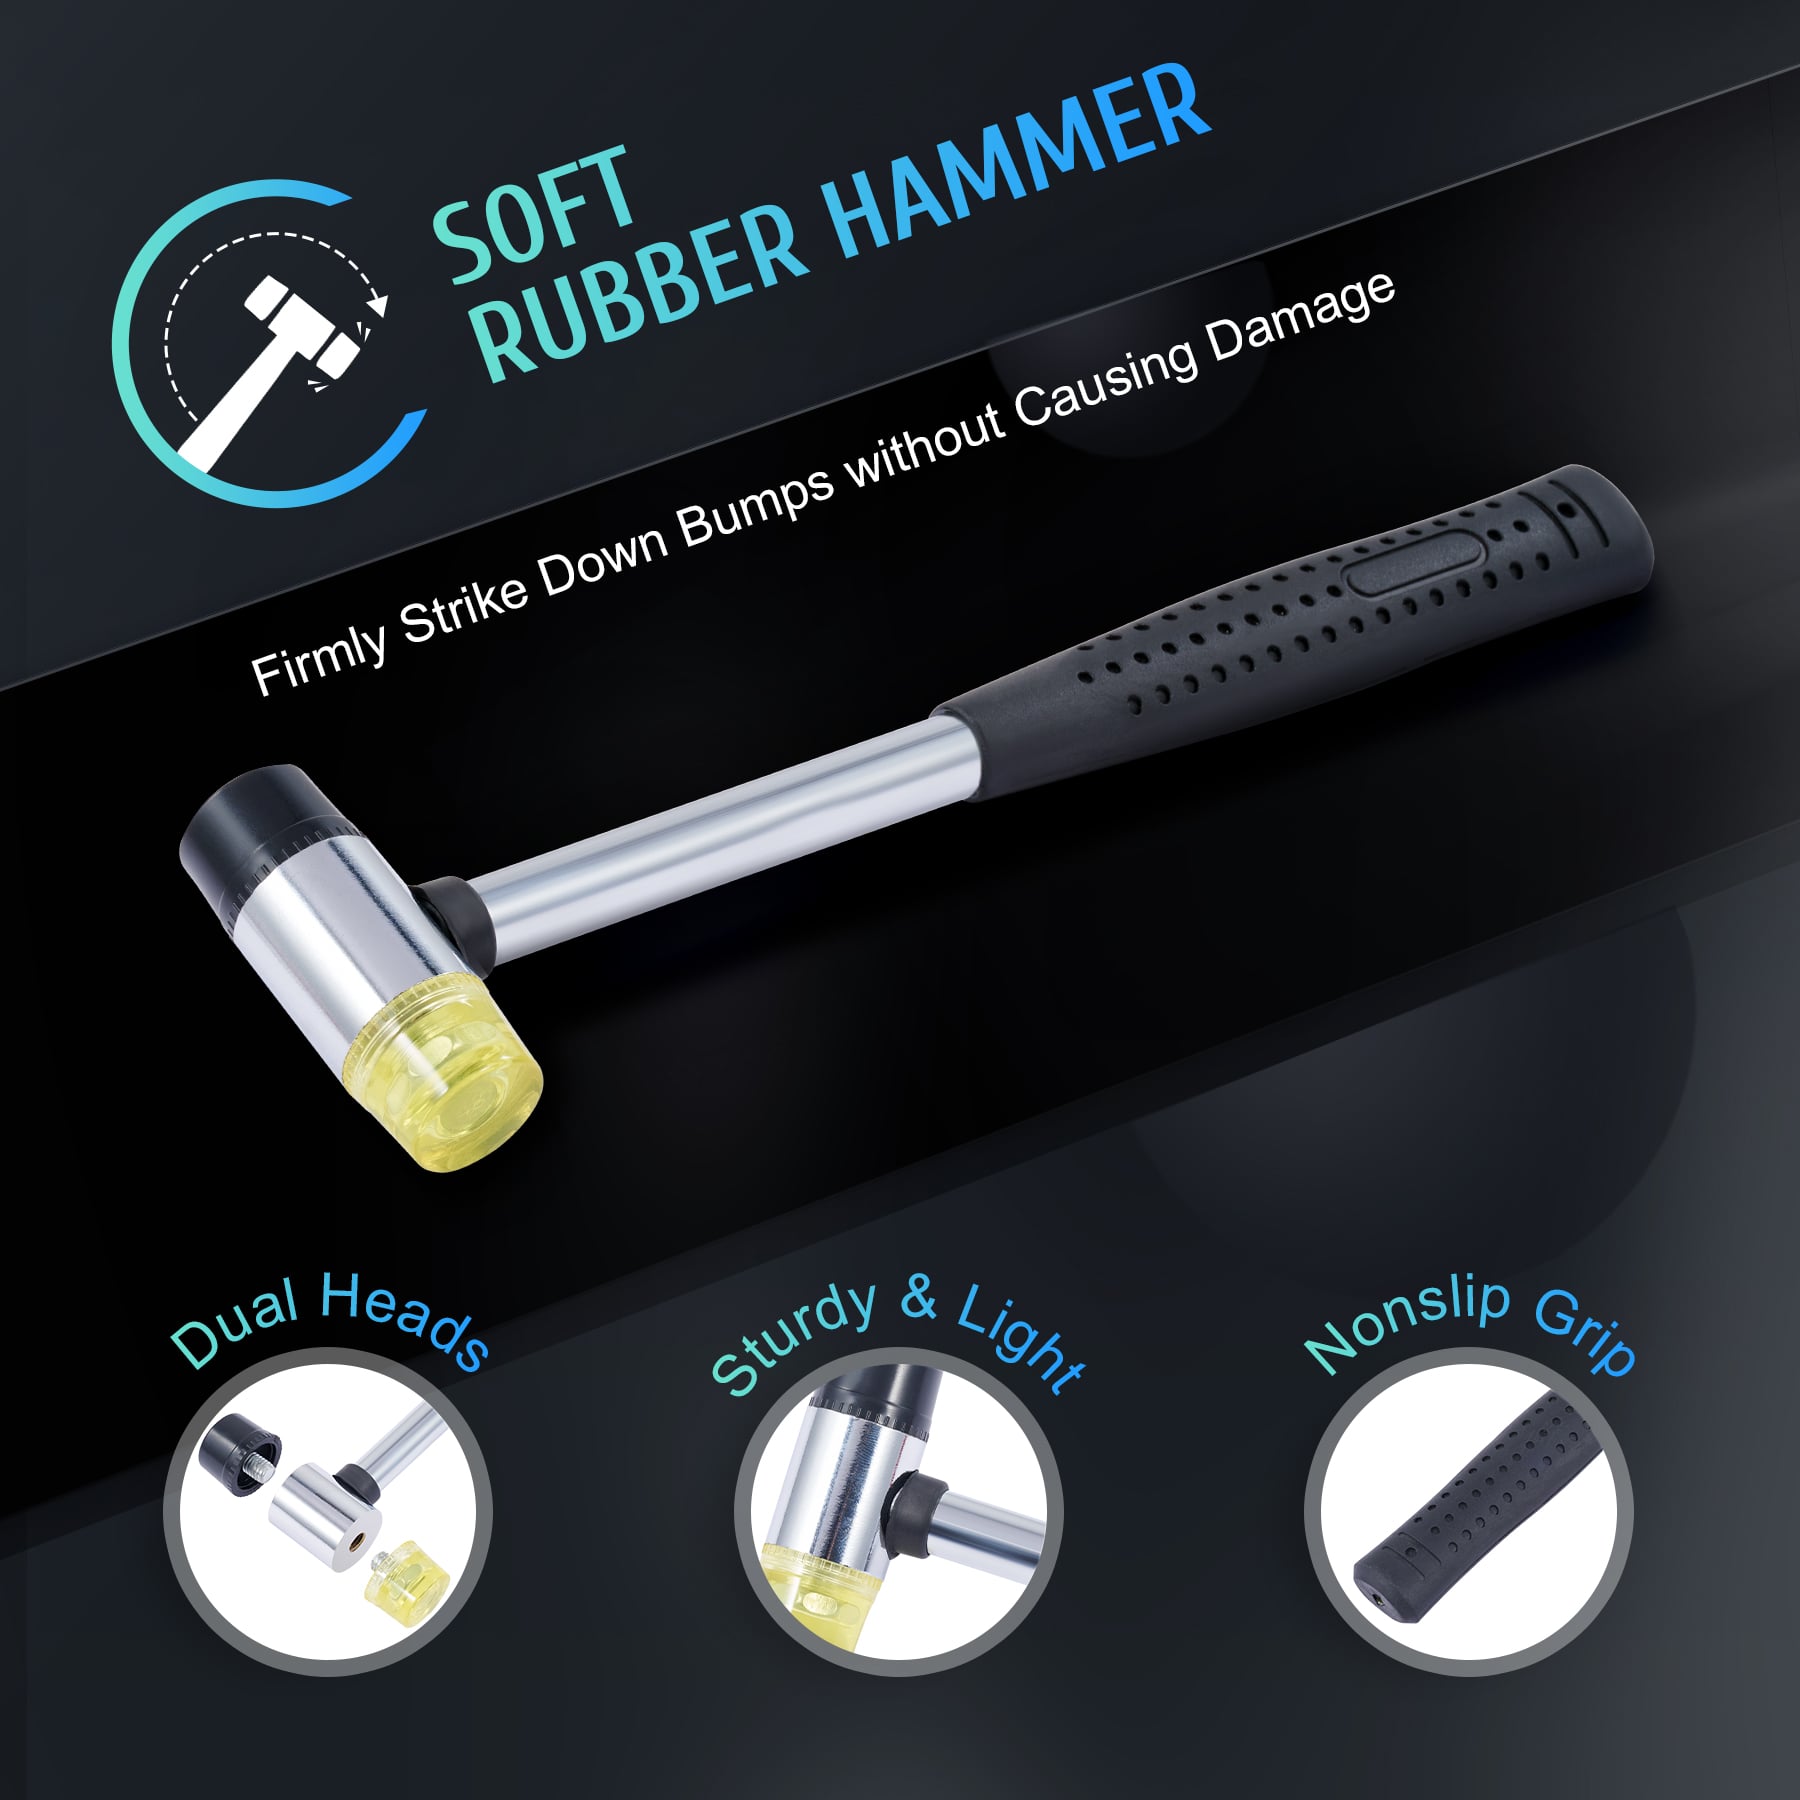 soft-rubber-hammer